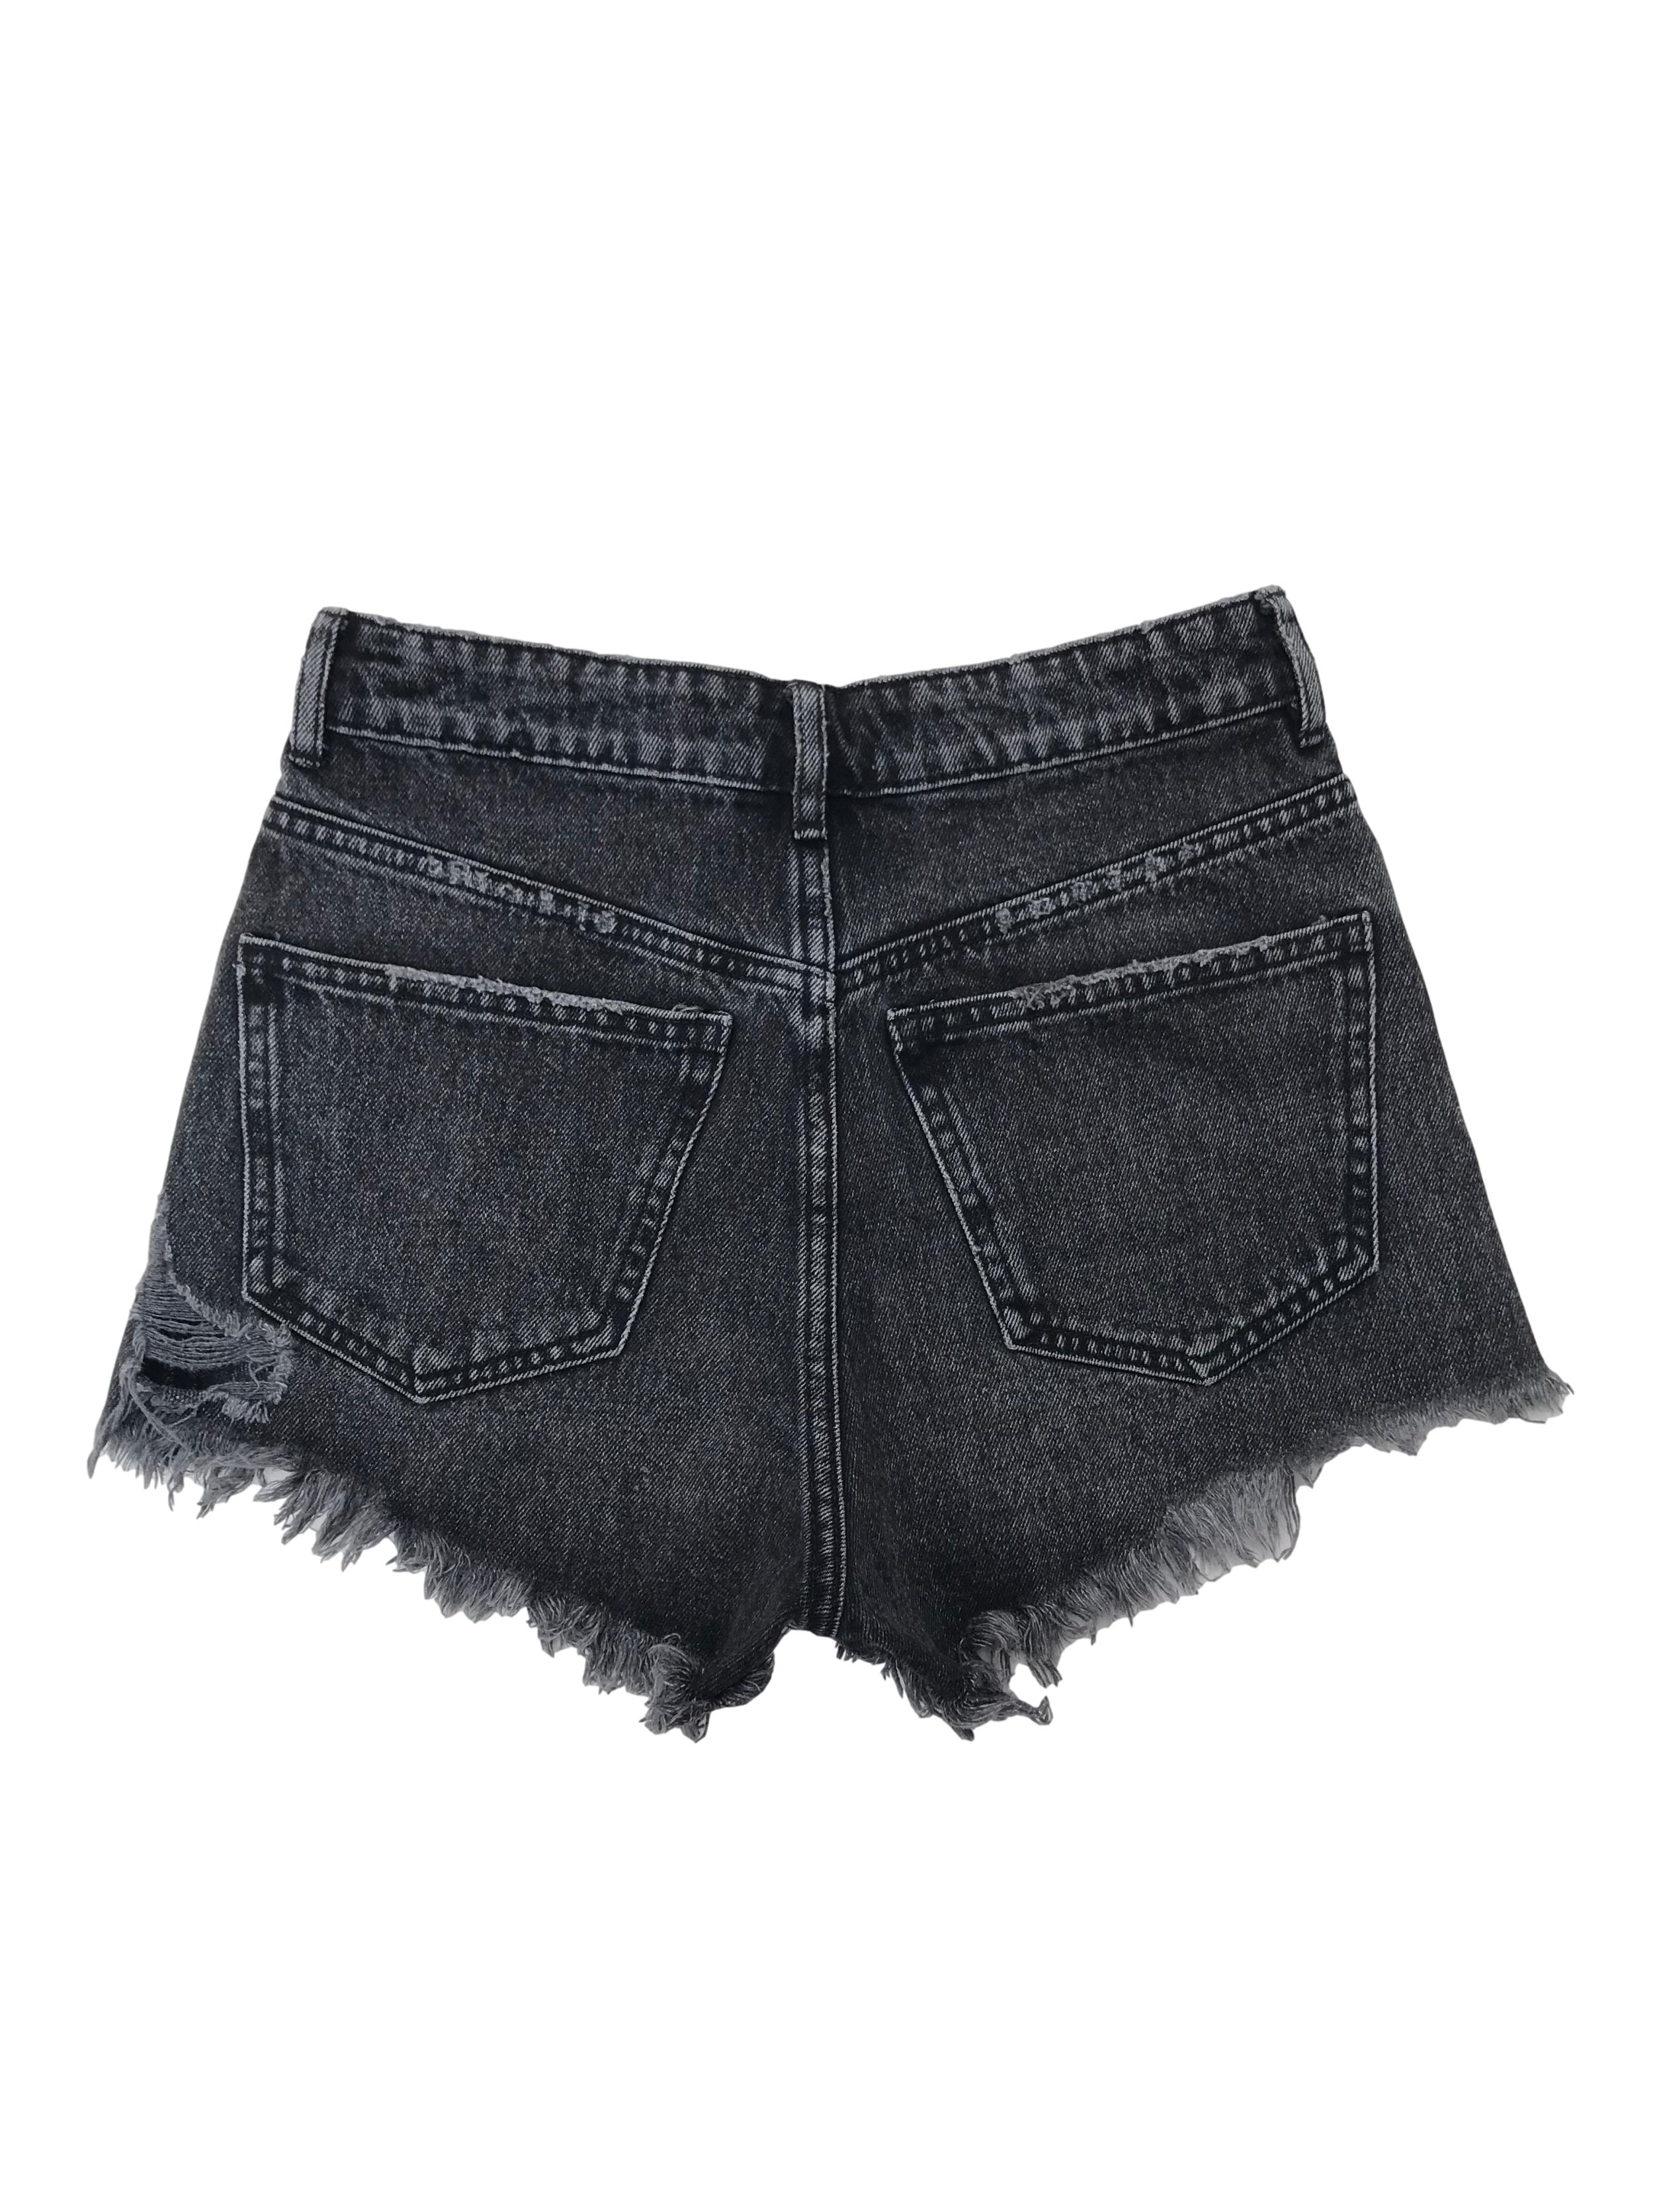 Short jean Zara a la cintura, negro con detalles lavados, rasgados y desflecados. Cintura 66cm Largo 30cm. Precio original S/ 129